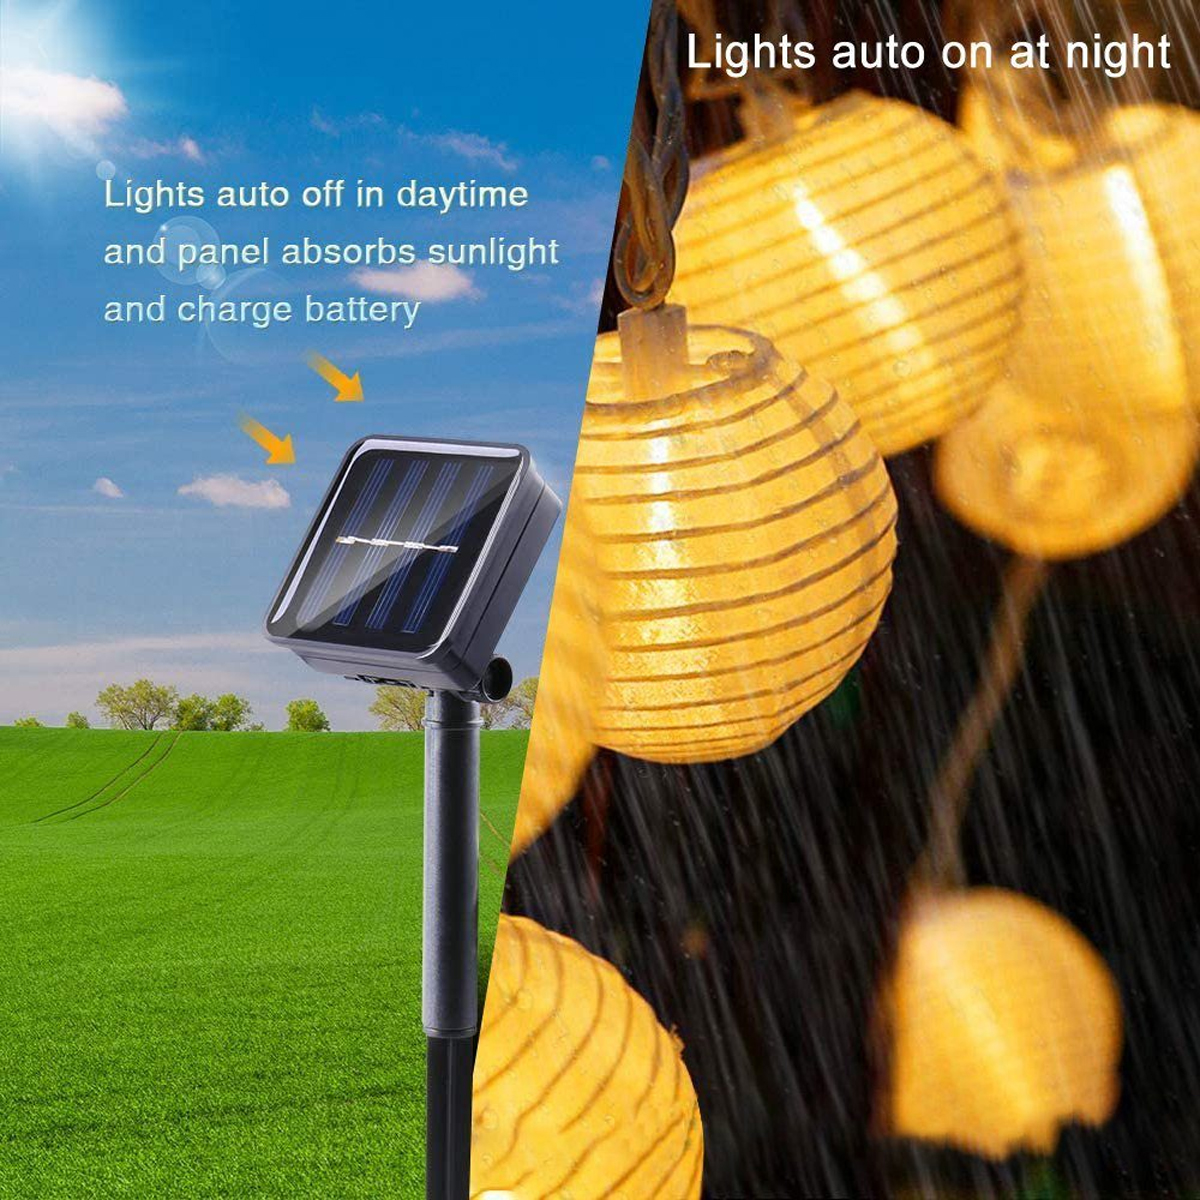 6.5m 30 Solar-Lichterketten, LED Laternen-Lichterkette, warmweiß LAMON Laternen-Saiten, Lichter Warmweiß Solarleuchte,